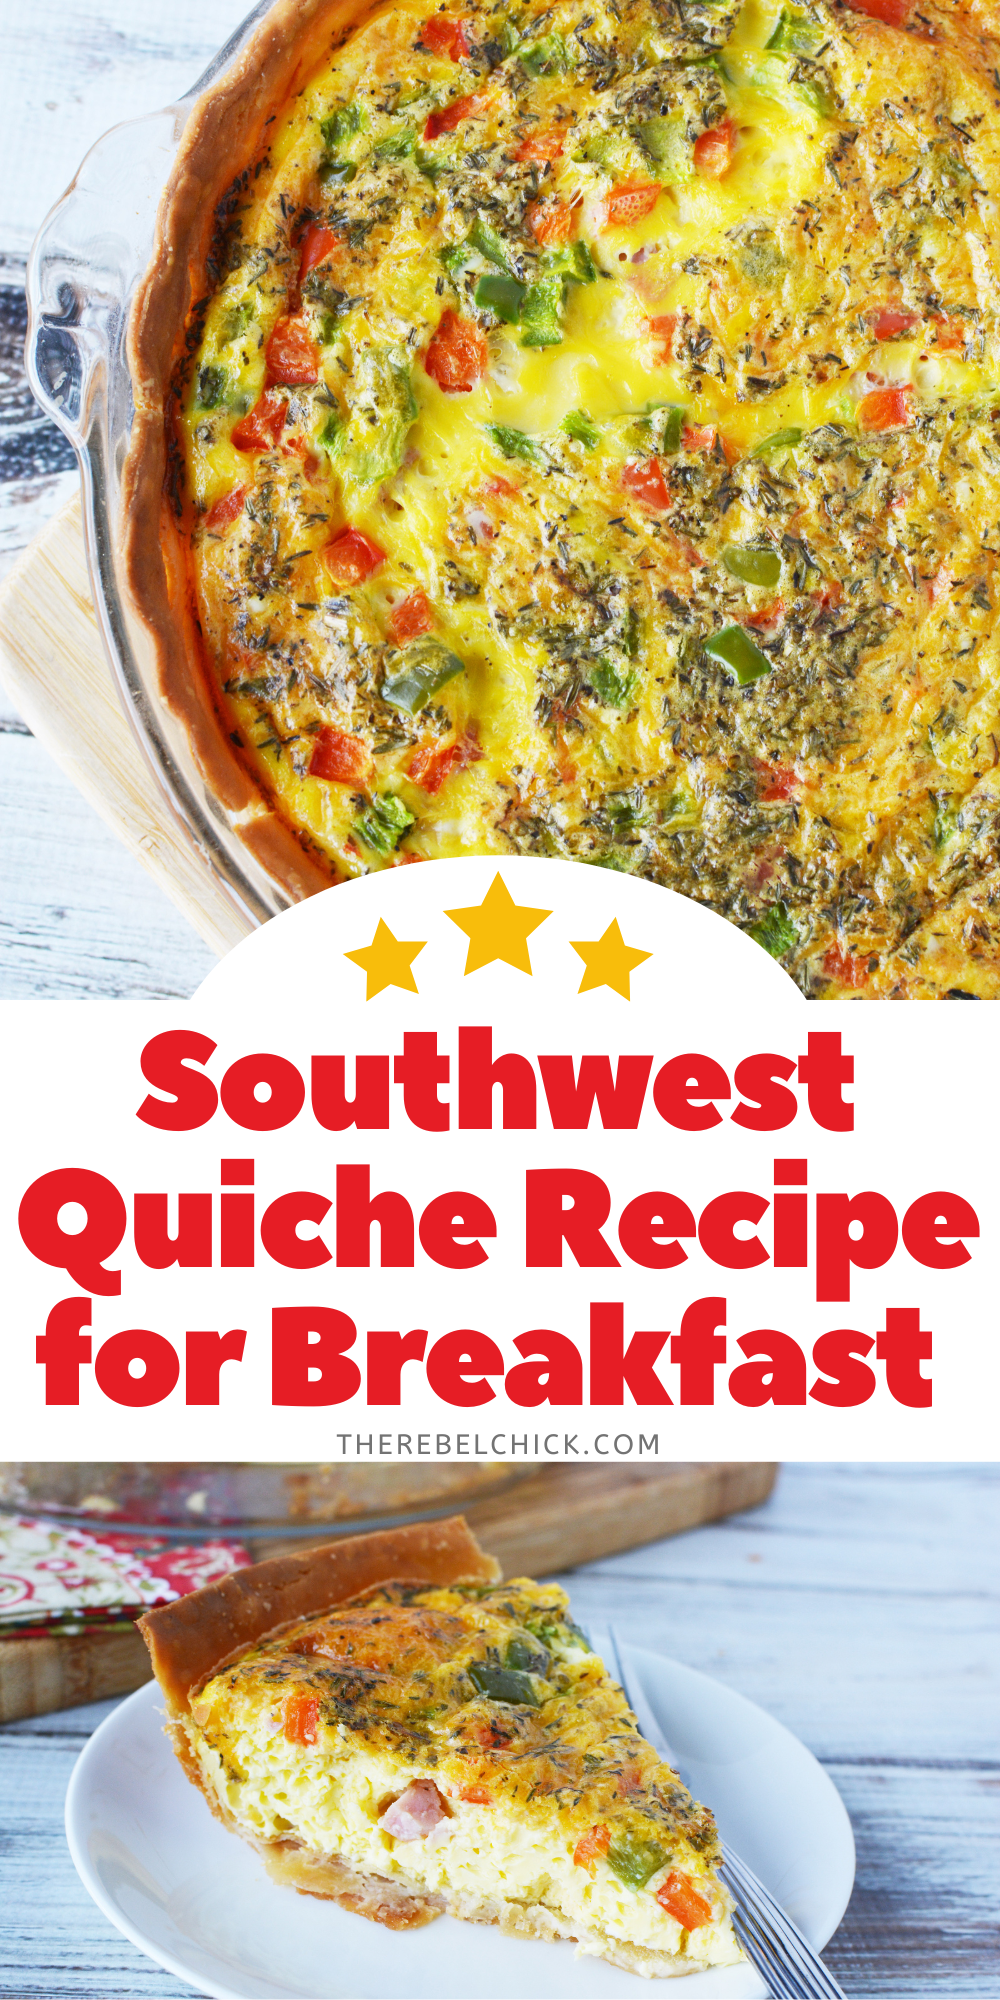 Southwest Quiche Recipe for Breakfast